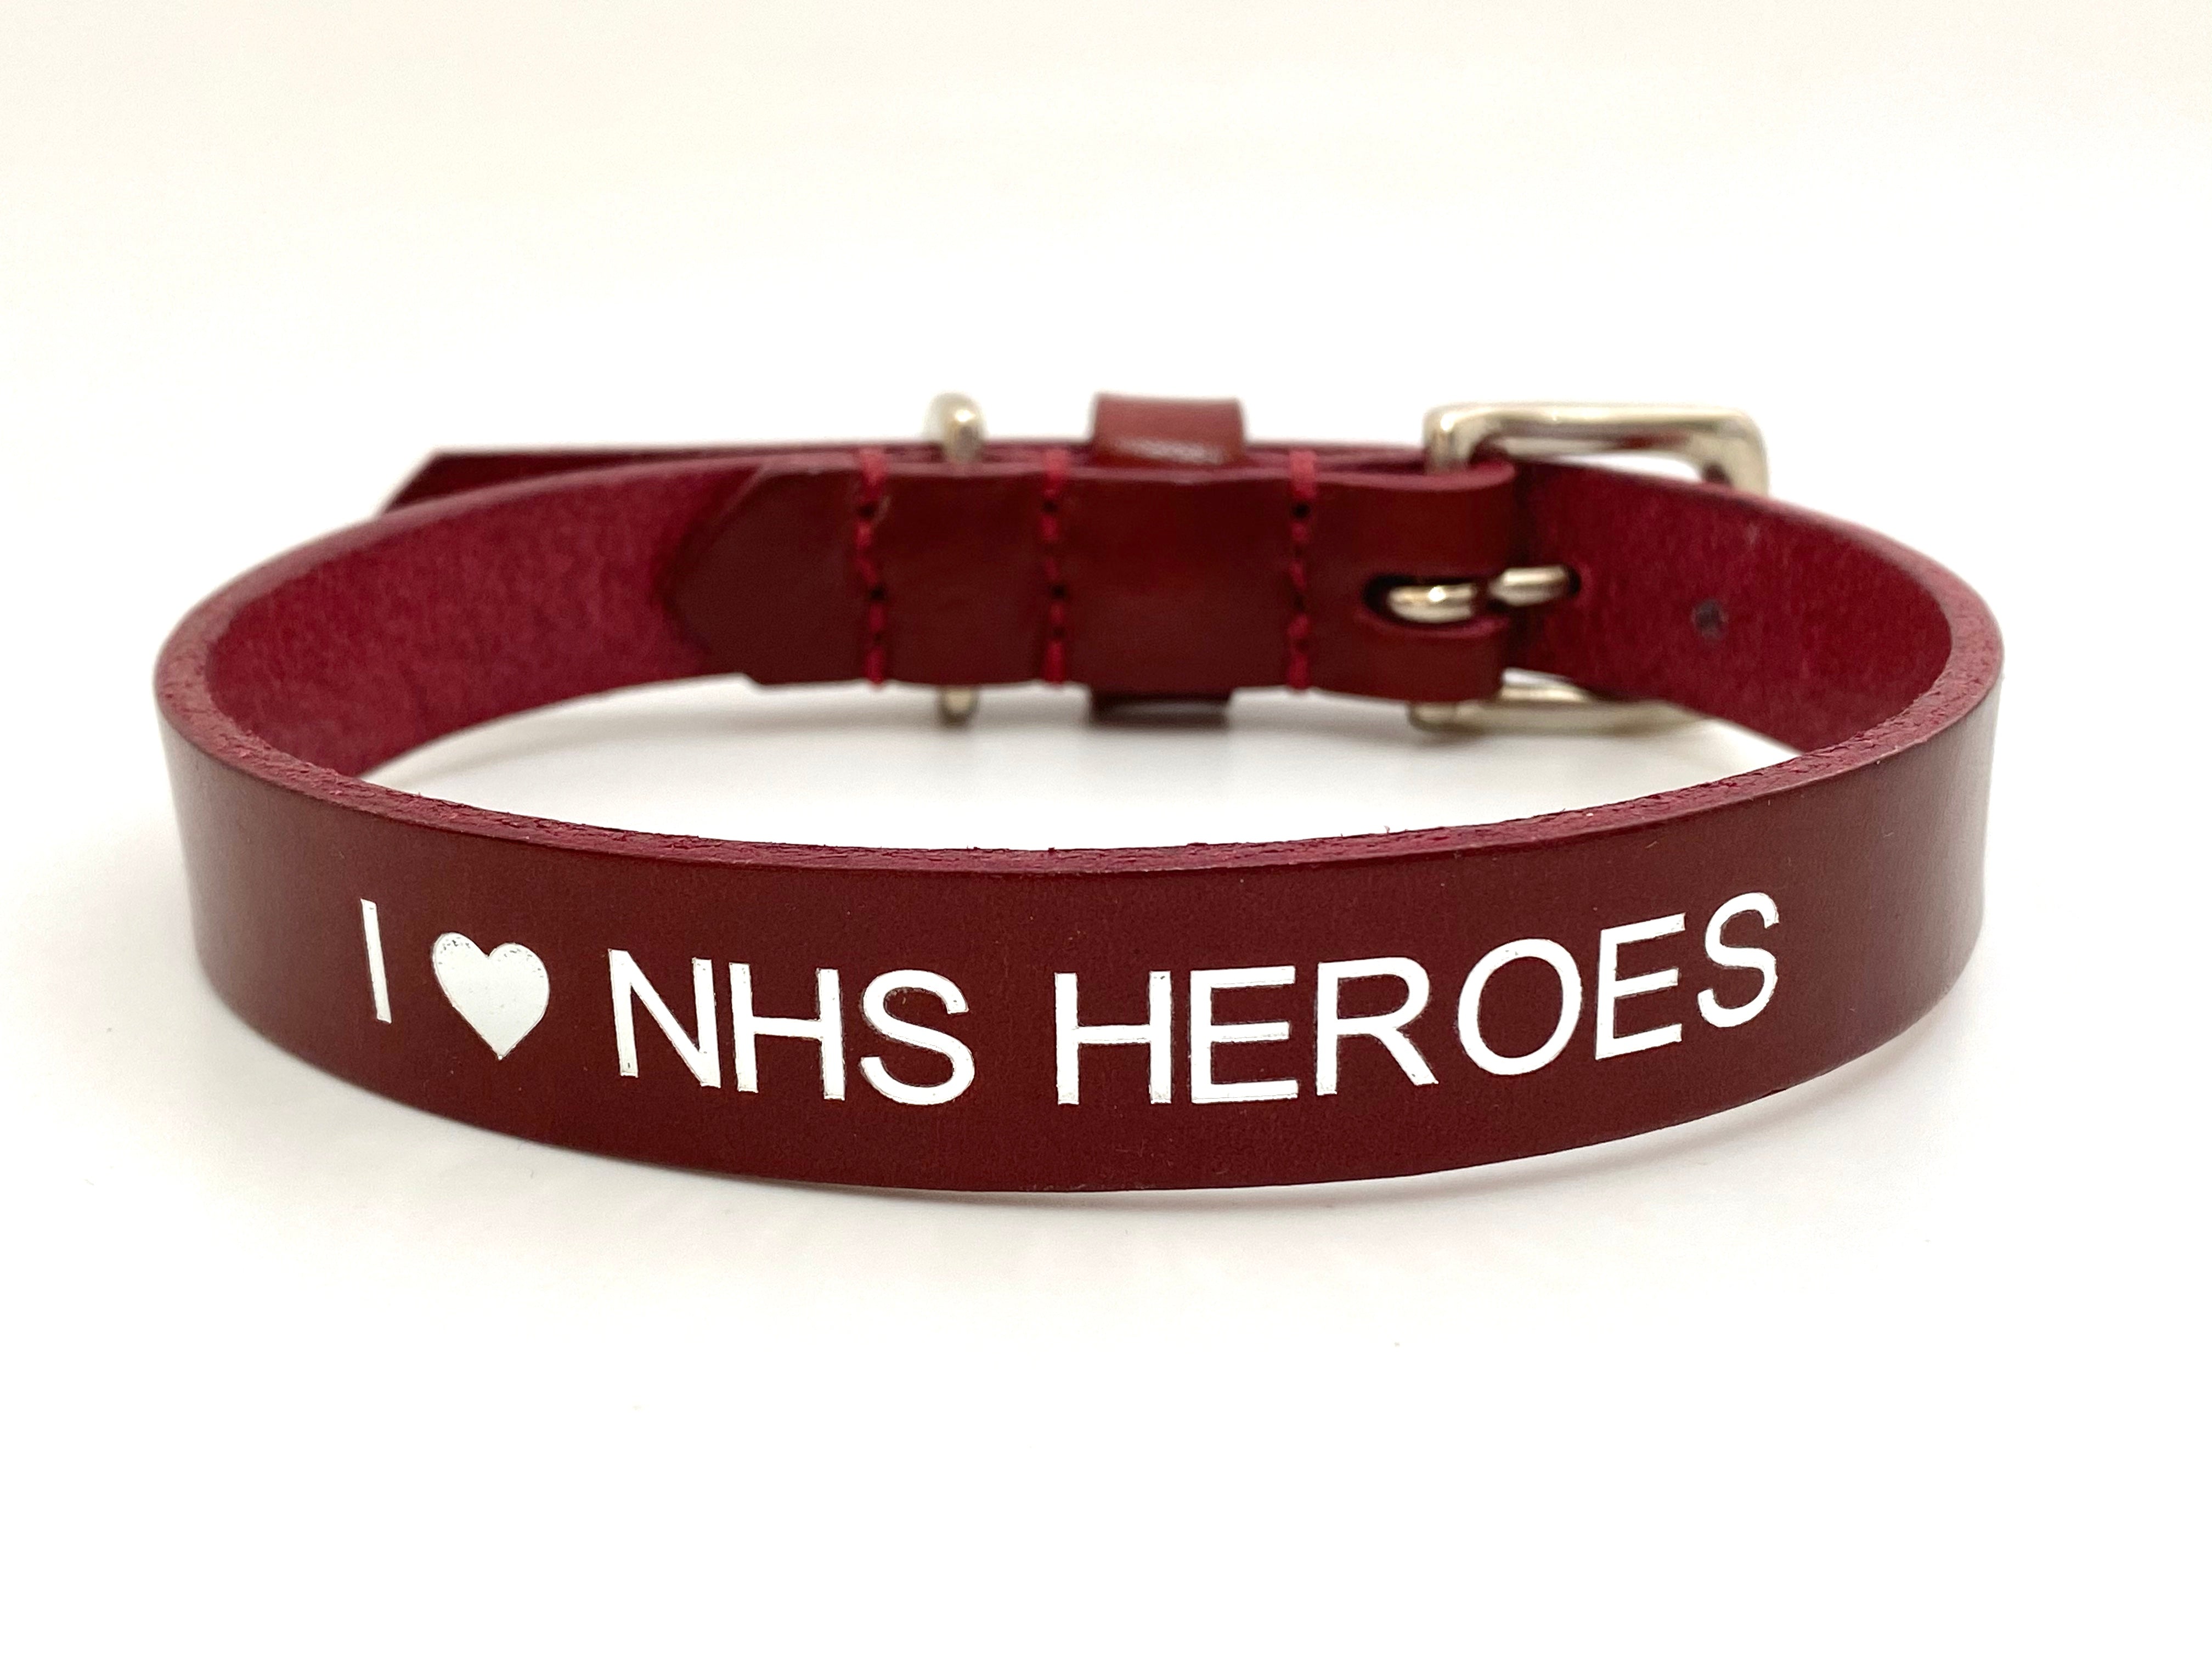 NHS Heroes collar